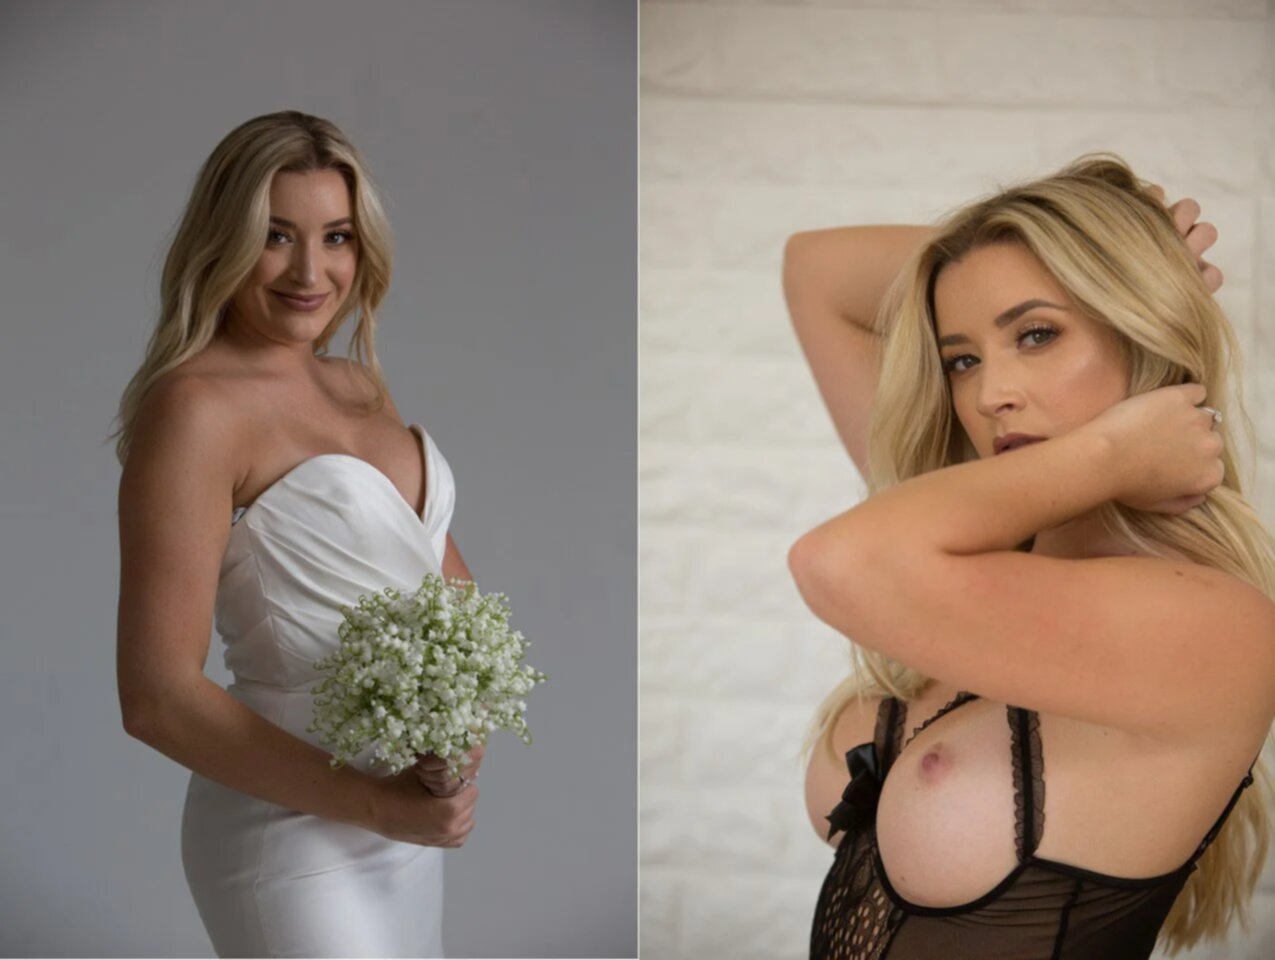 Best amateur brides 1 - Porn Videos and Photos